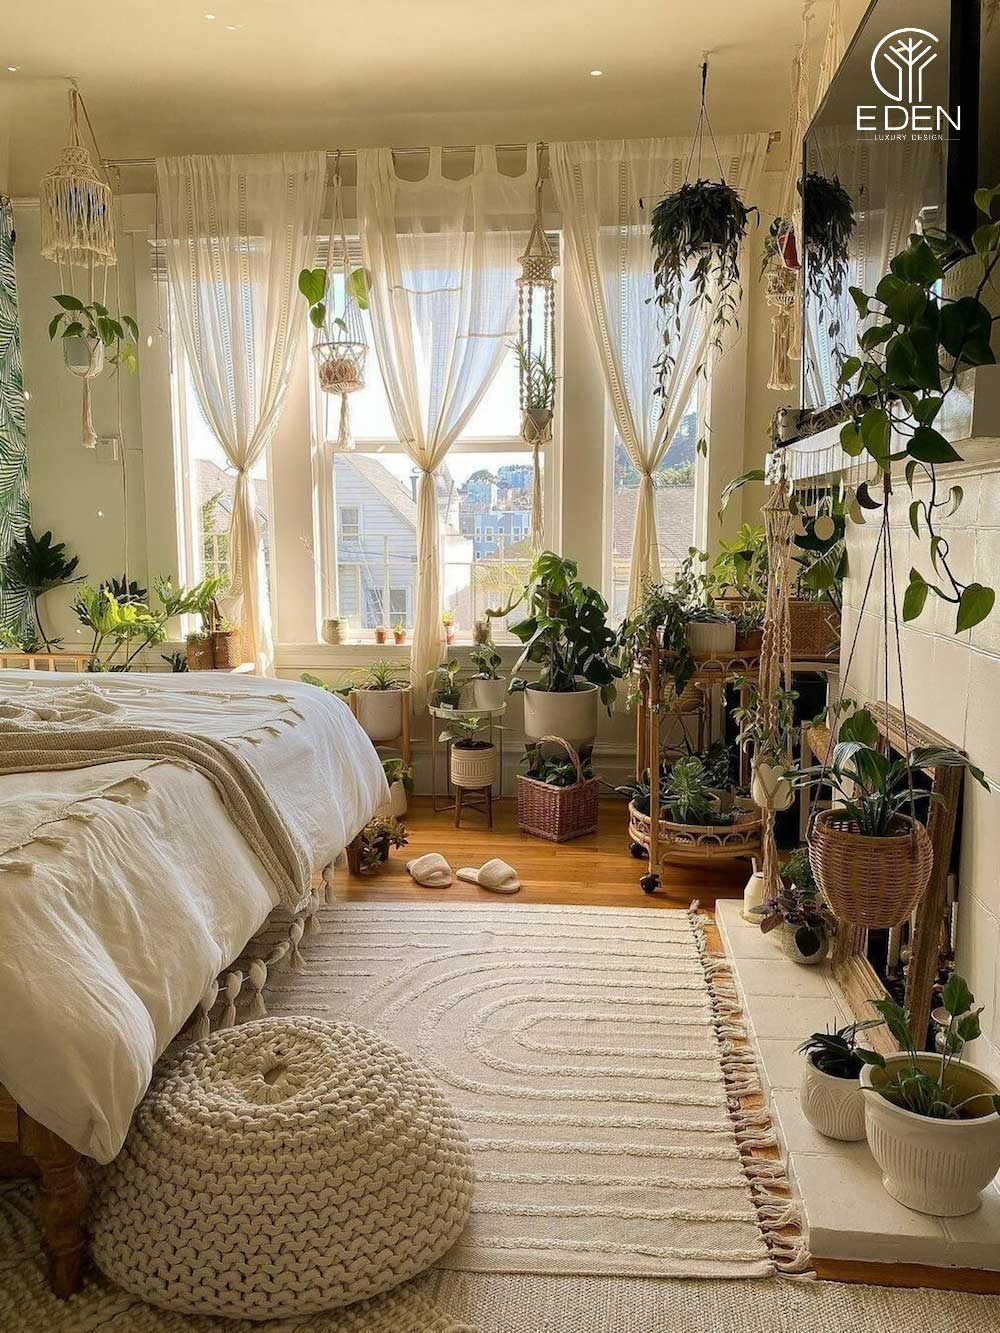 Trang trí phòng ngủ với nhiều chậu canh xanh tre trên cửa sổ hoặc đặt trên nền nhà